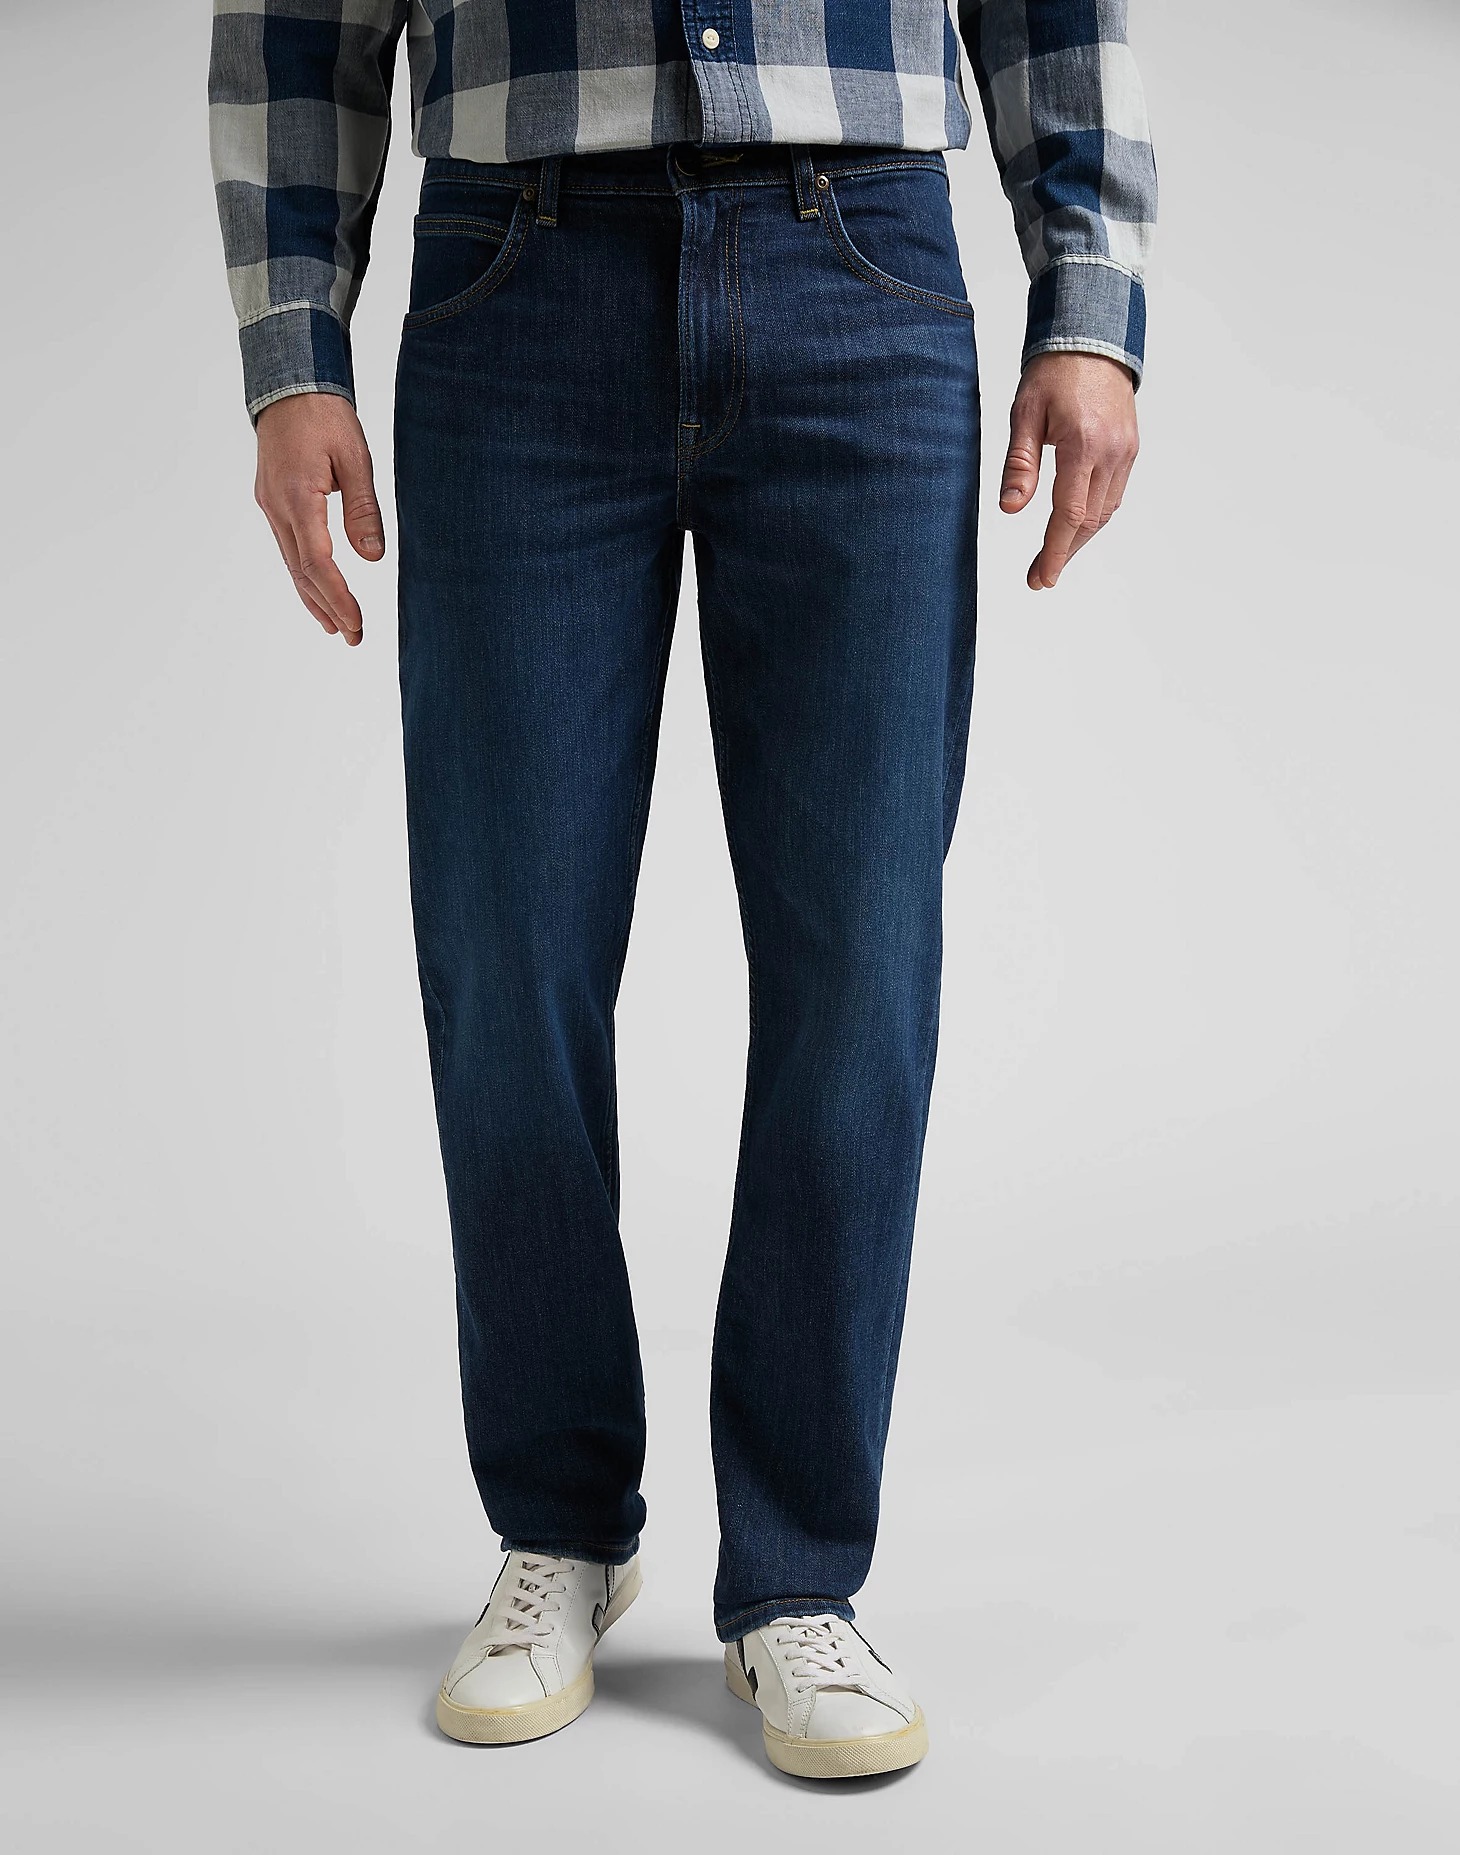 фото Джинсы мужские lee men brooklyn straight jeans синие 33/34